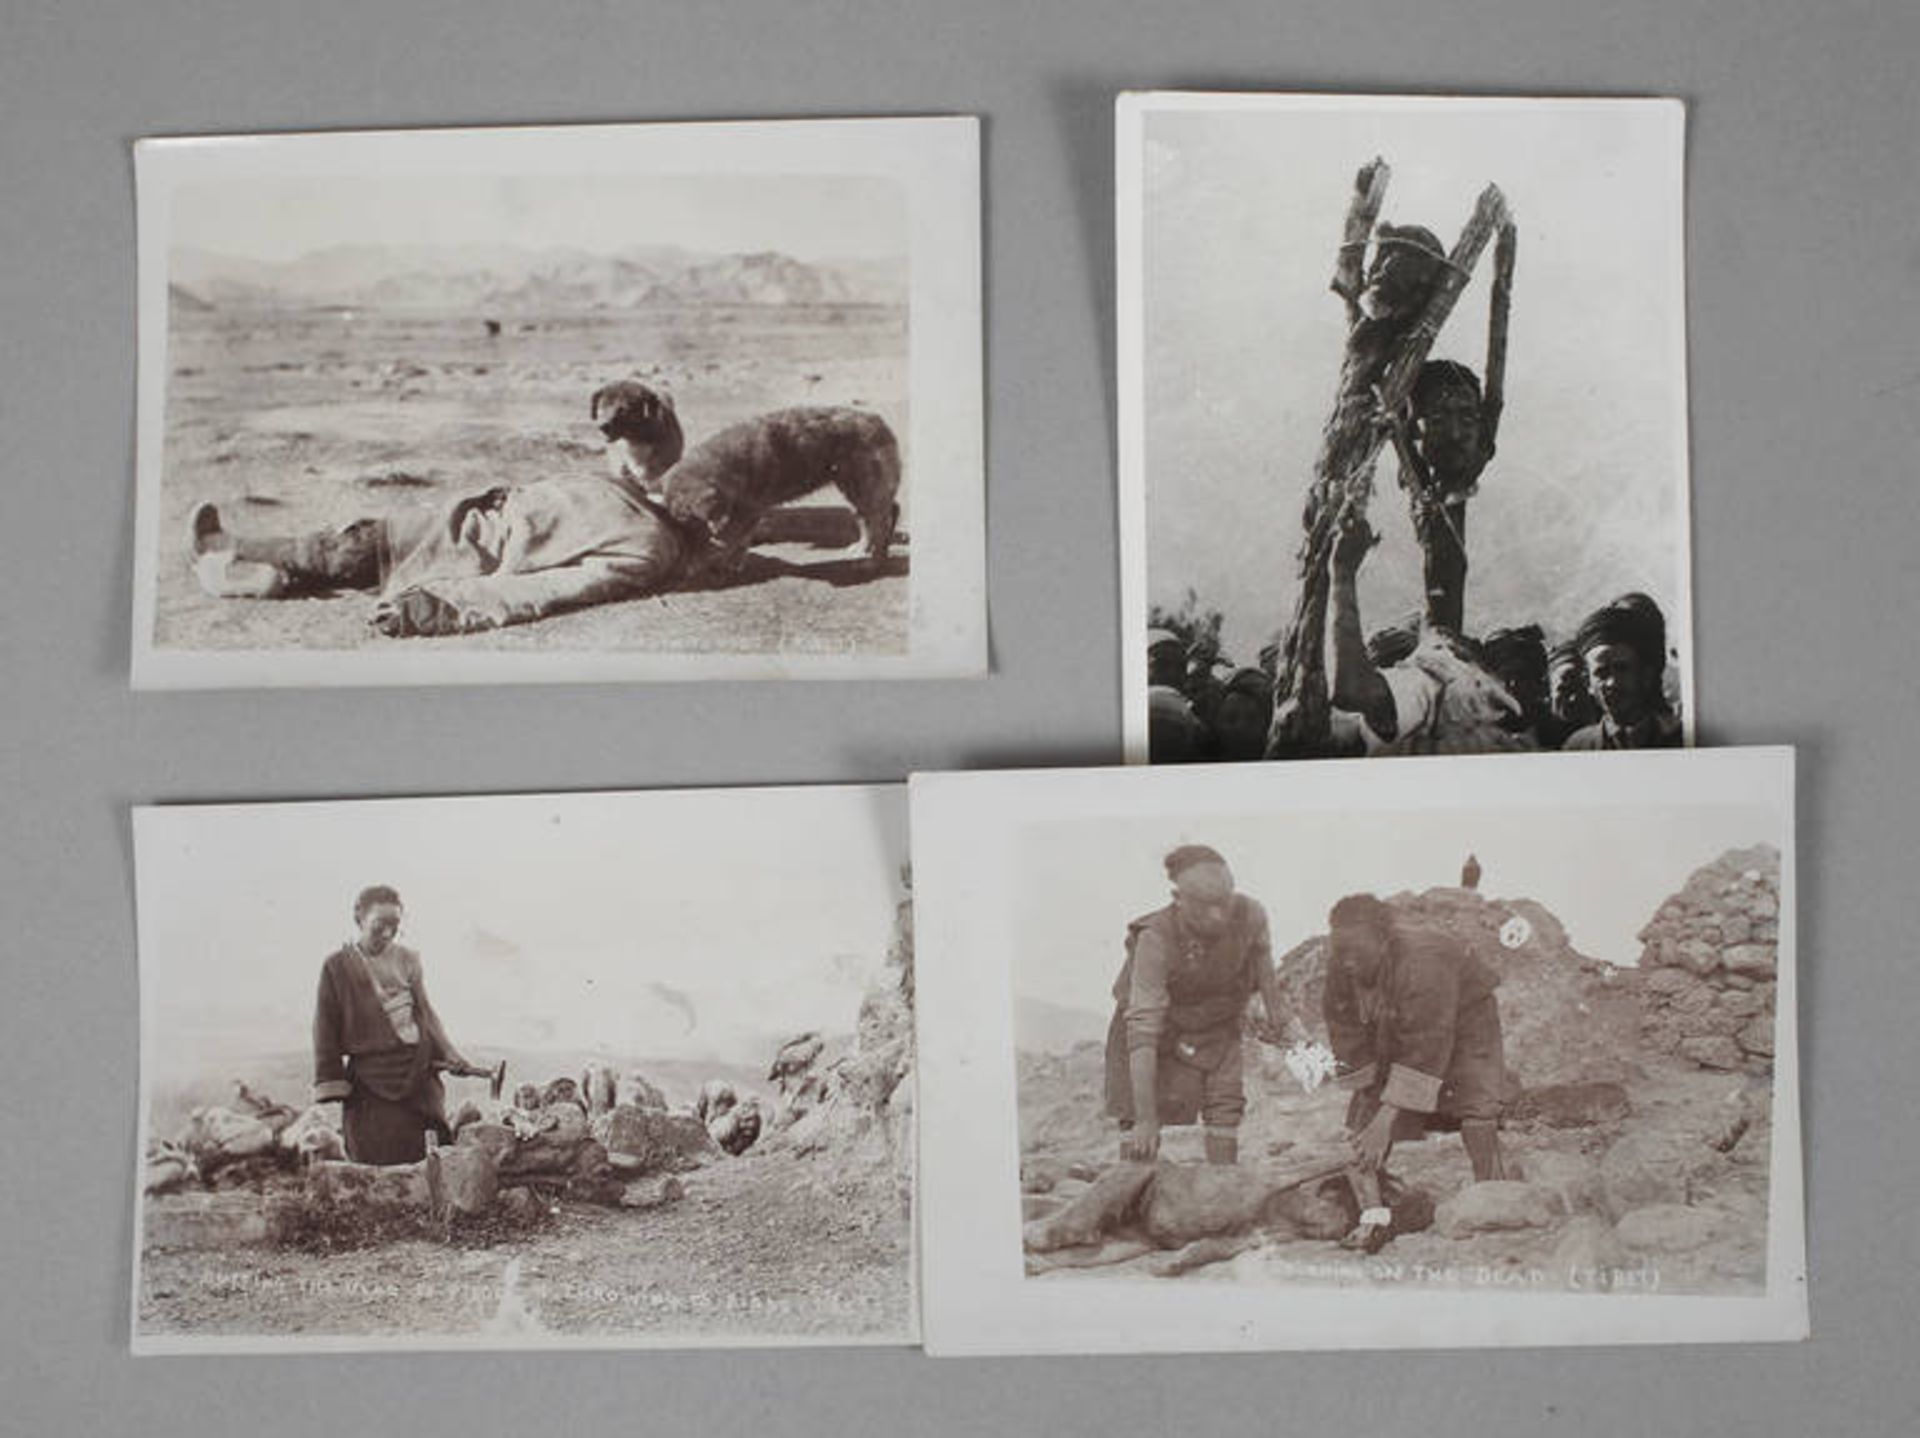 Vier Fotografien Tibet
Landschaftsaufnahmen teils mit gefallenen Tibetern, wohl aus der Zeit des